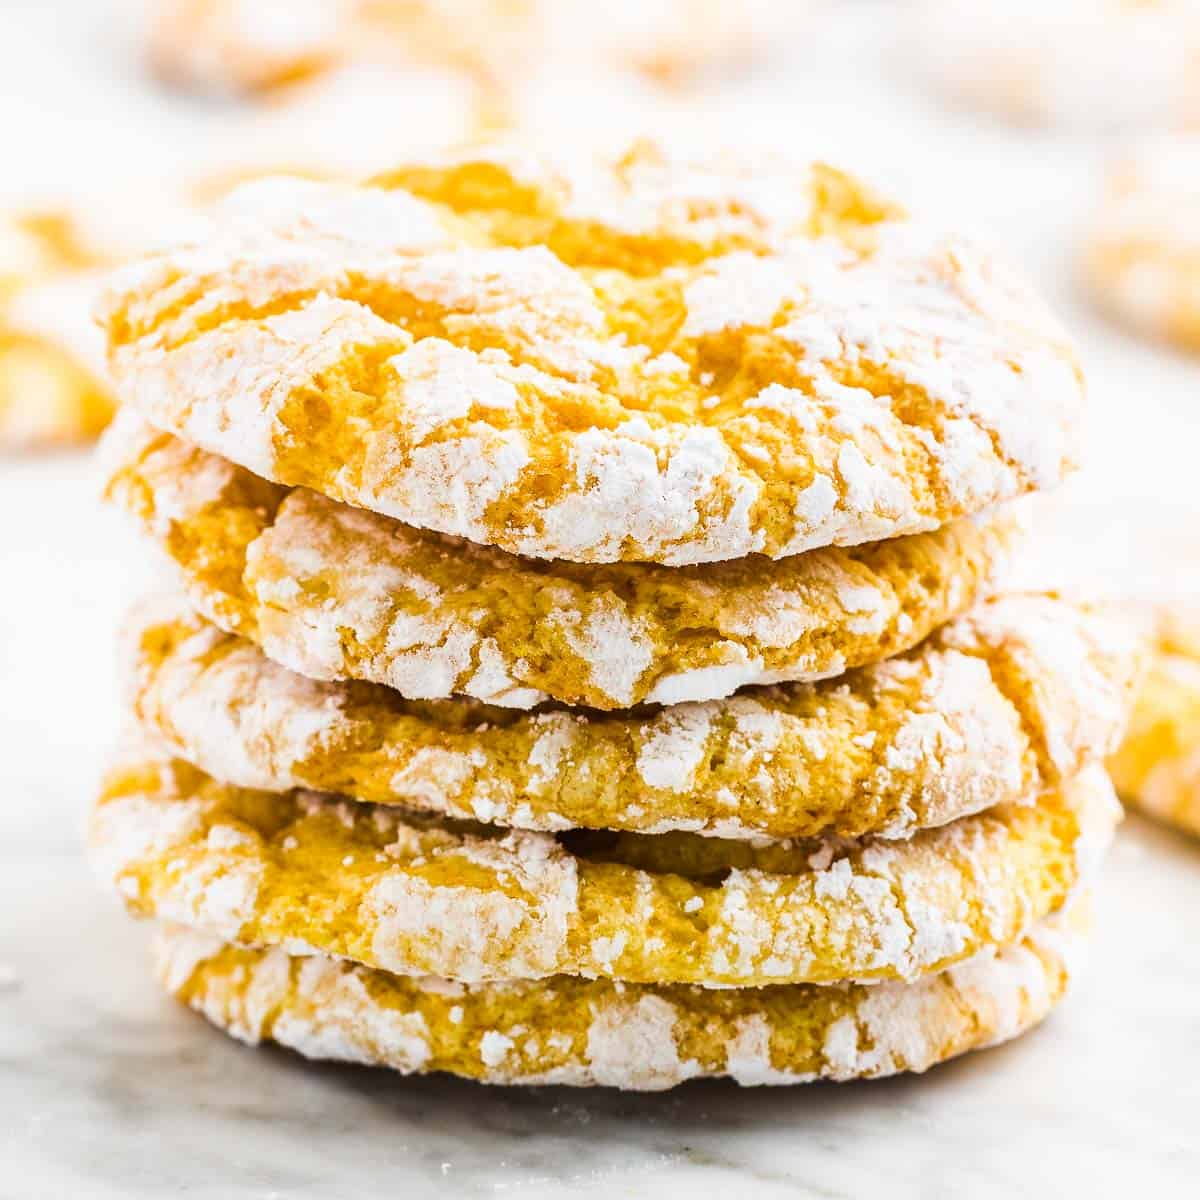 A stack of freshly baked Lemon Crinkle Cookies.